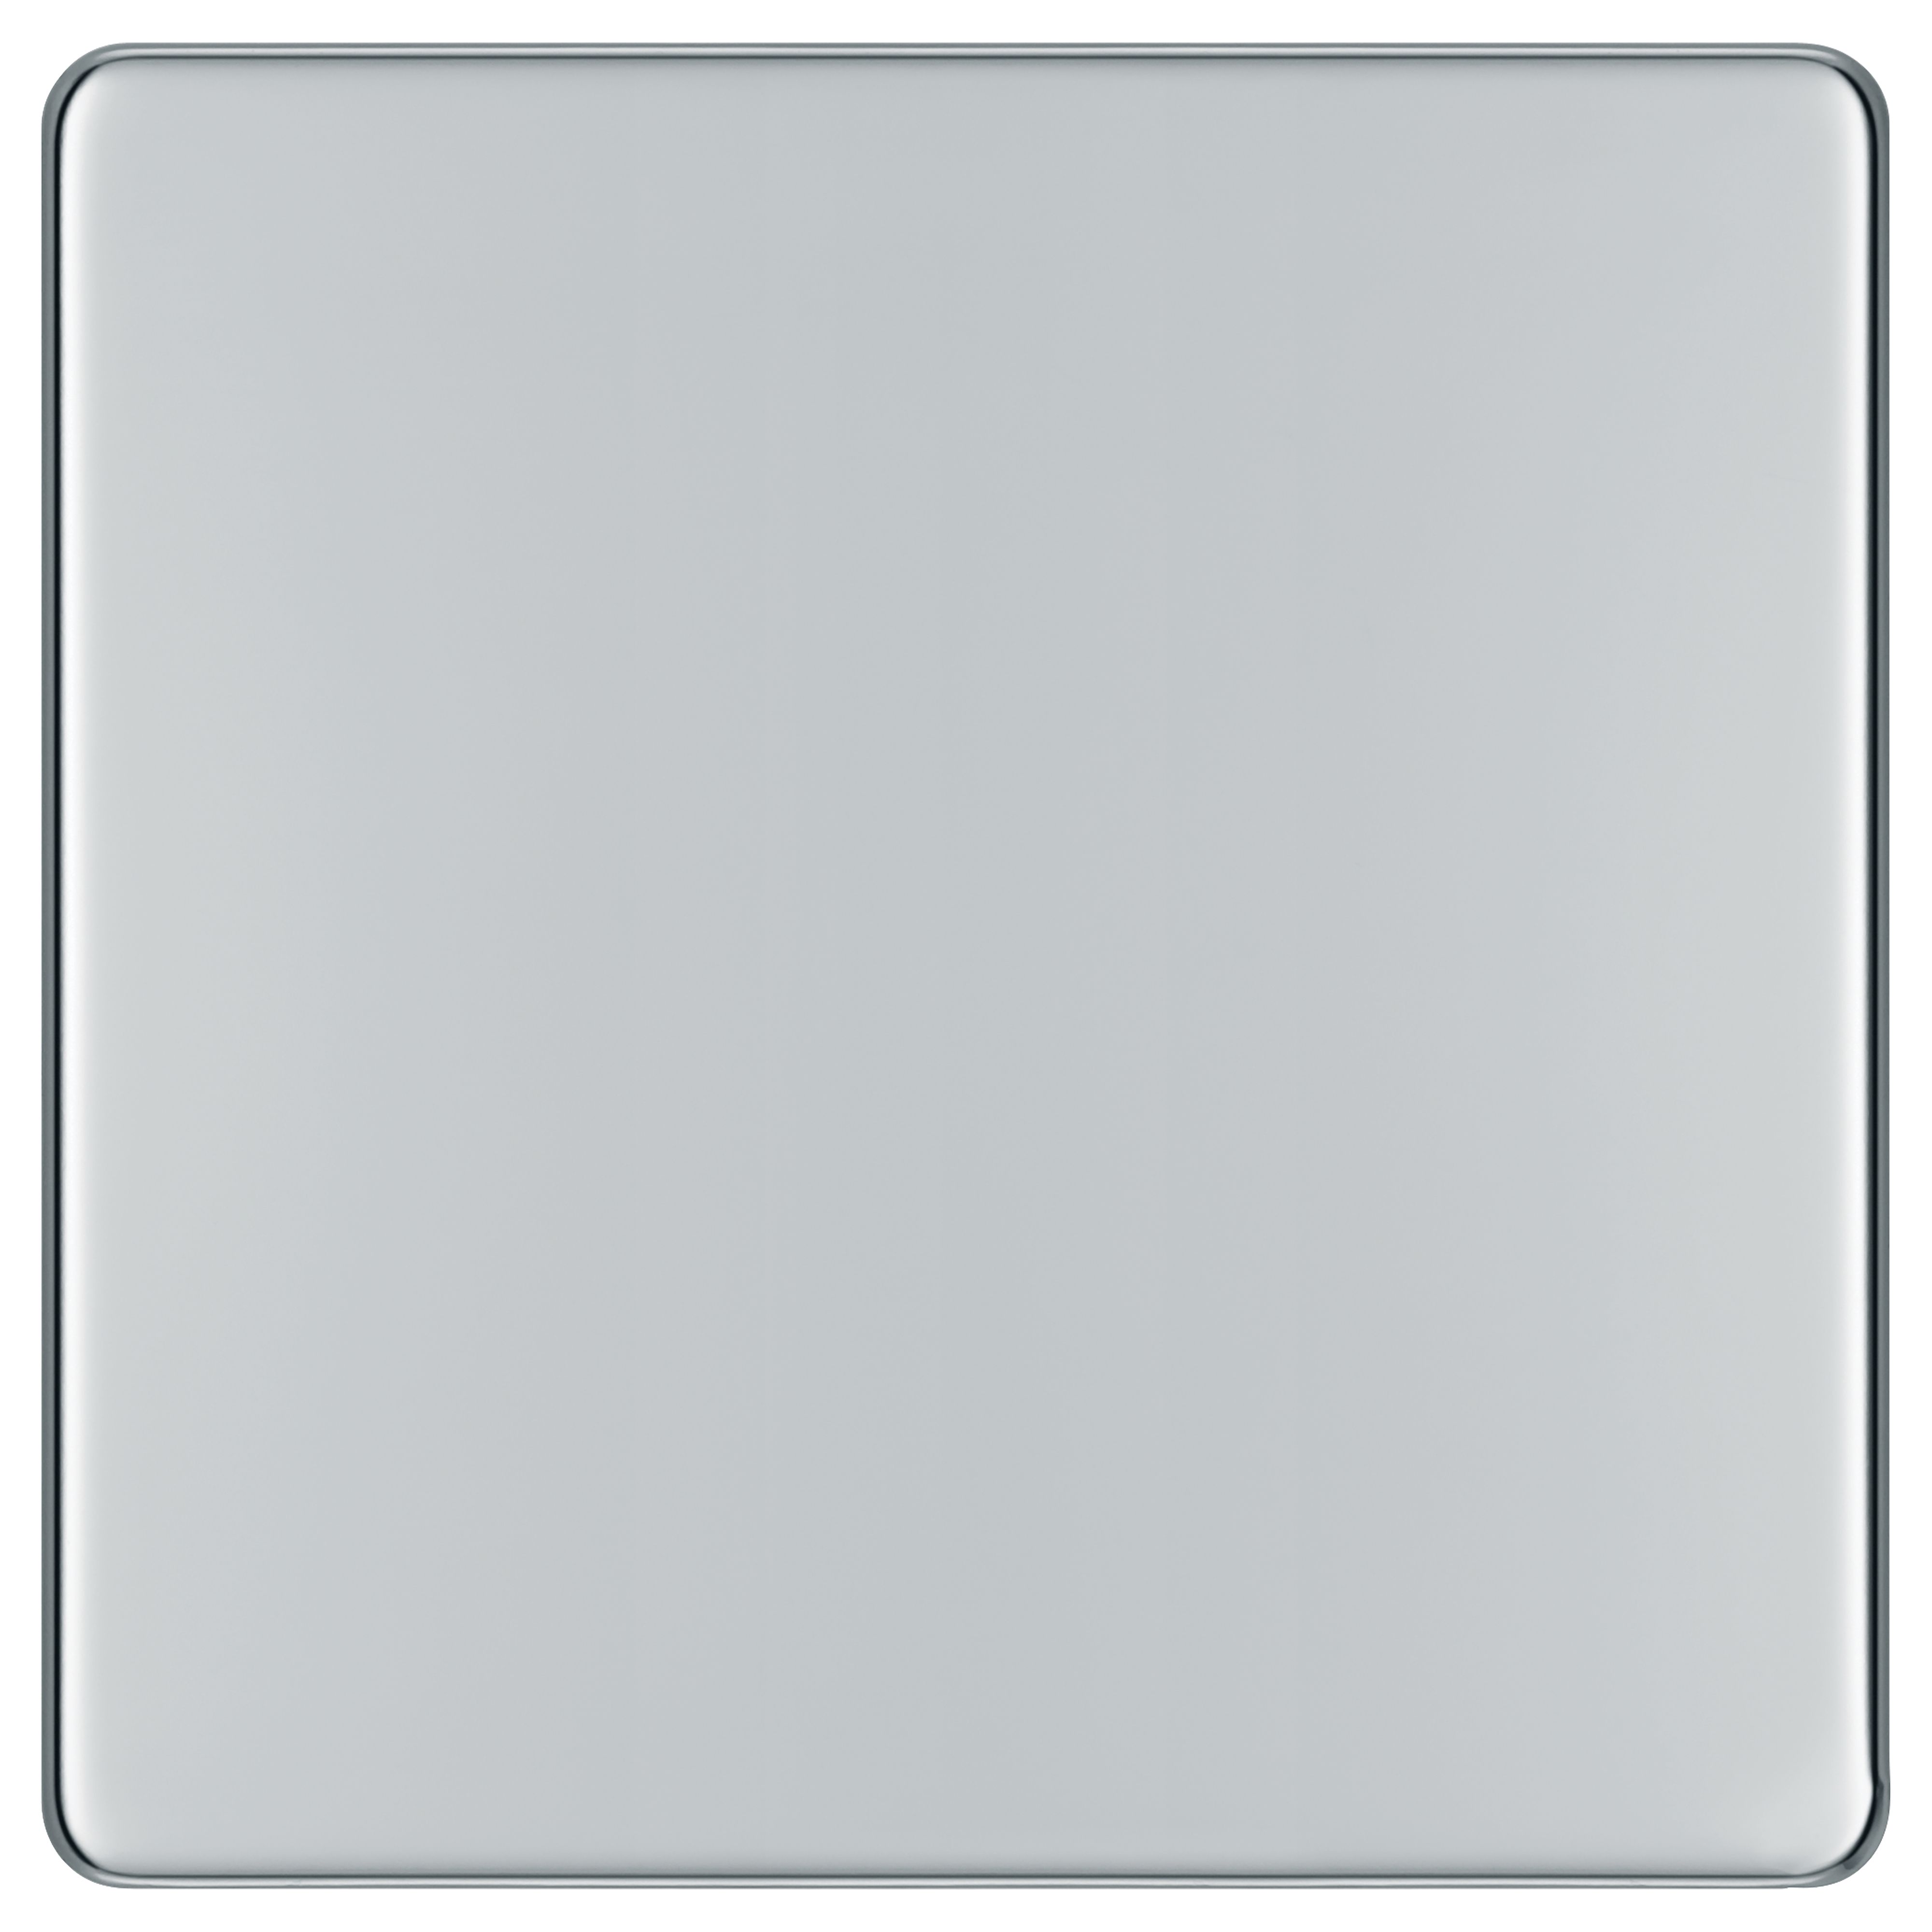 BG Screwless Flatplate Polished Chrome 1 Gang Blank Plate